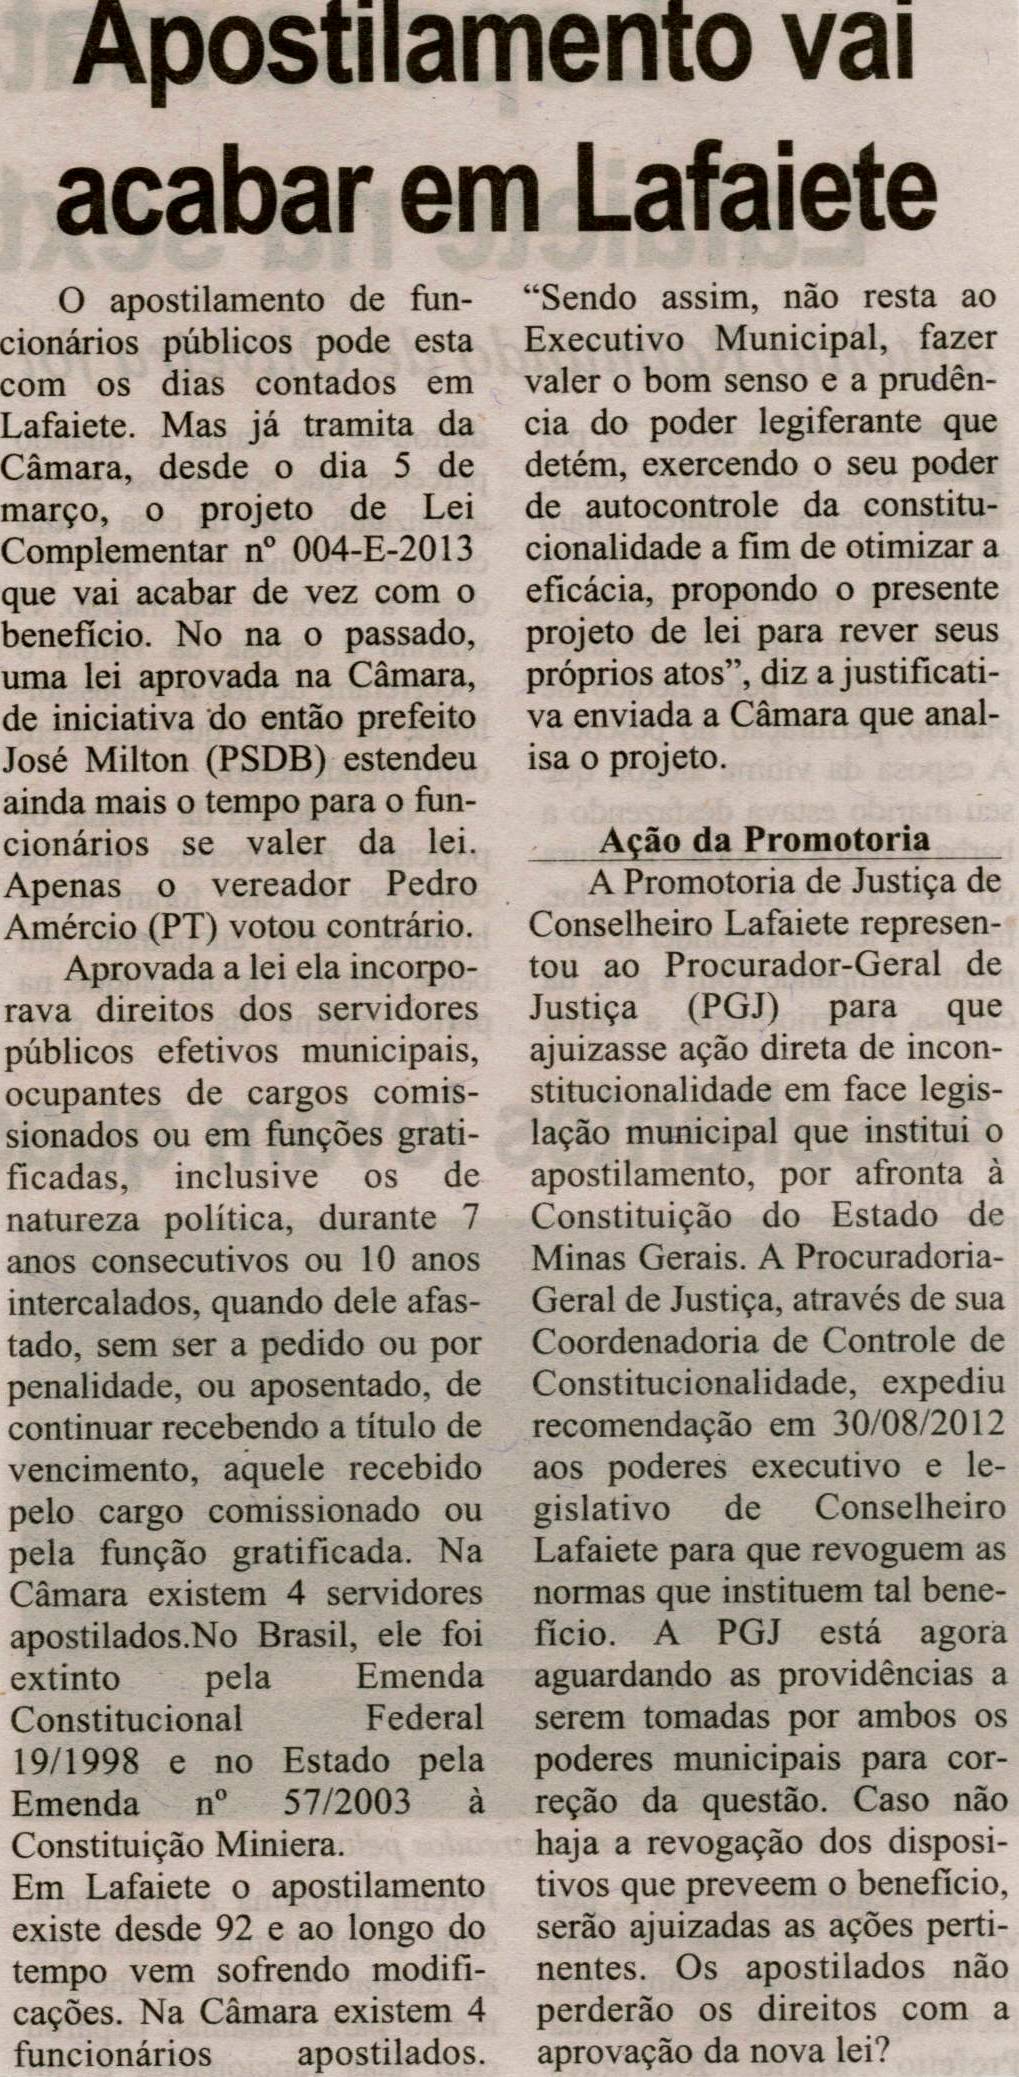 Apostilamento vai acabar em Lafaiete. Correio de Minas, Conselheiro Lafaiete, 06 abr. 2013, p. 09.